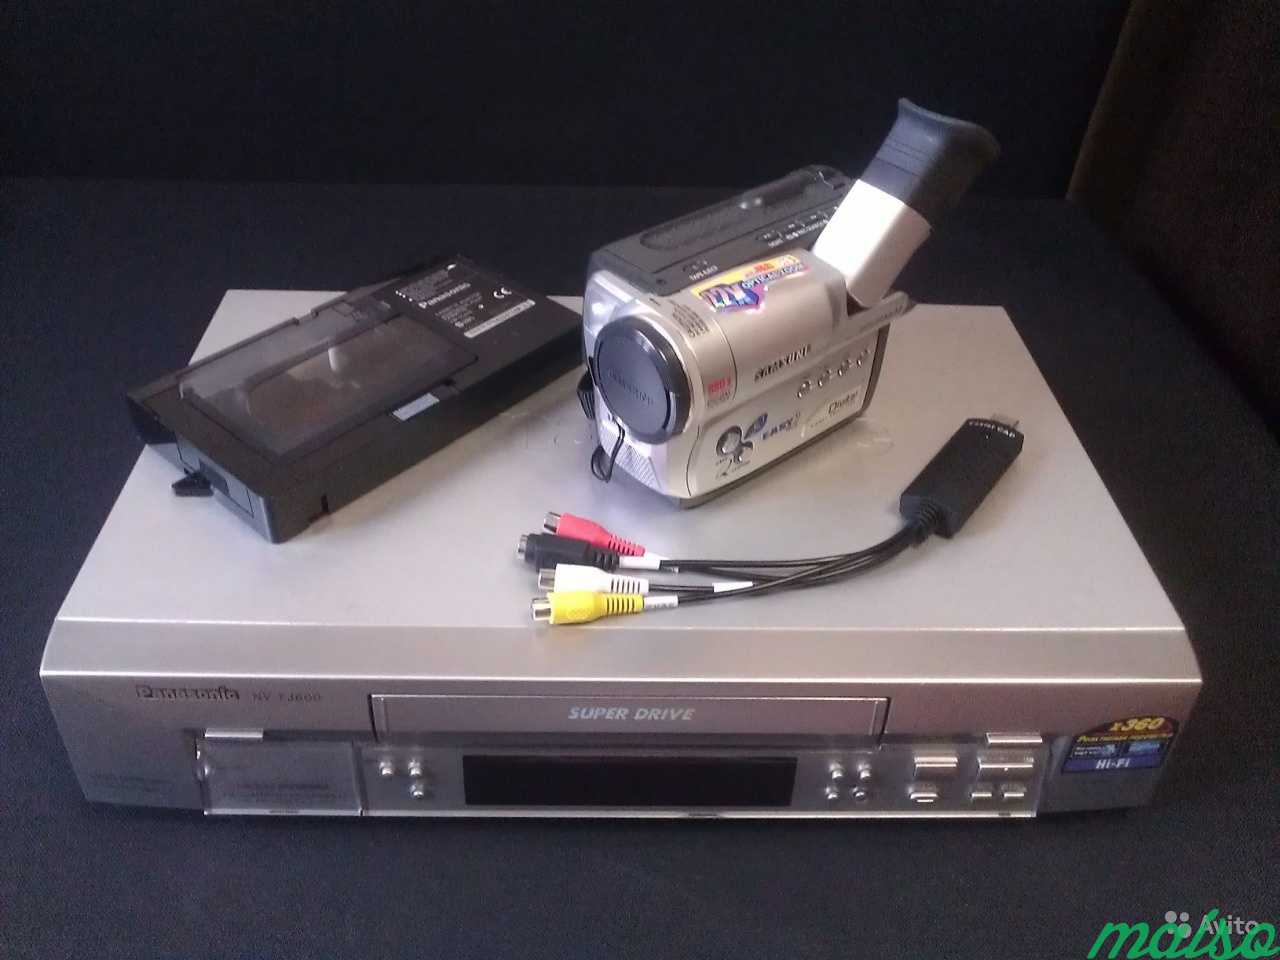 Переписать видео с кассеты. Оцифровка VHS DV hi8. Оцифровка видеокассет hi8. Кассеты. Hi8 оцифровка. Оцифровка видеокассет MINIDV.